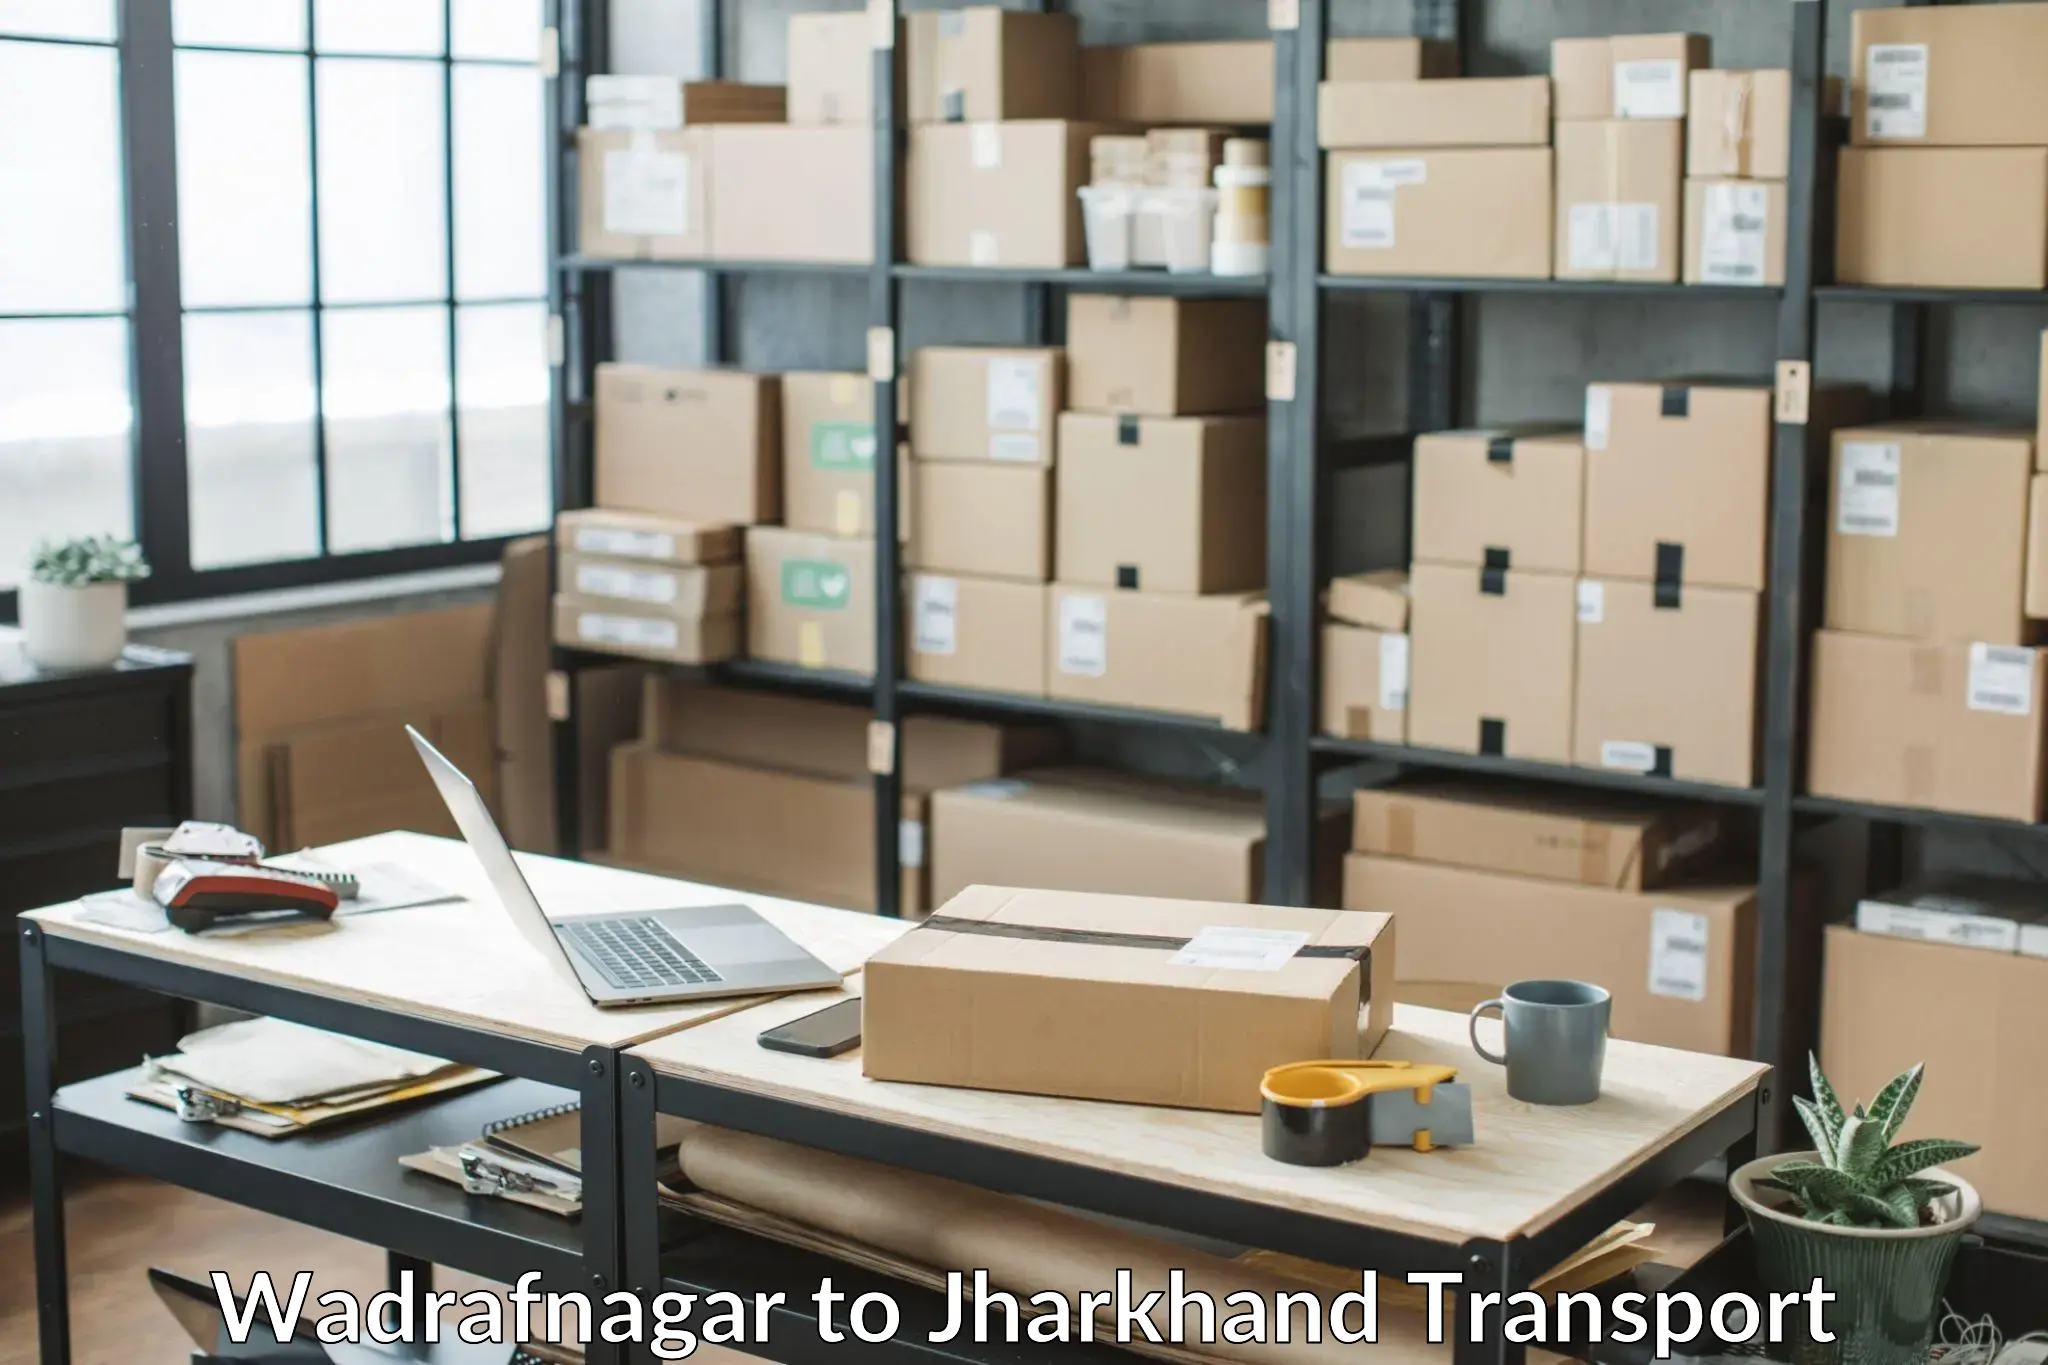 Bike shipping service Wadrafnagar to Jharkhand